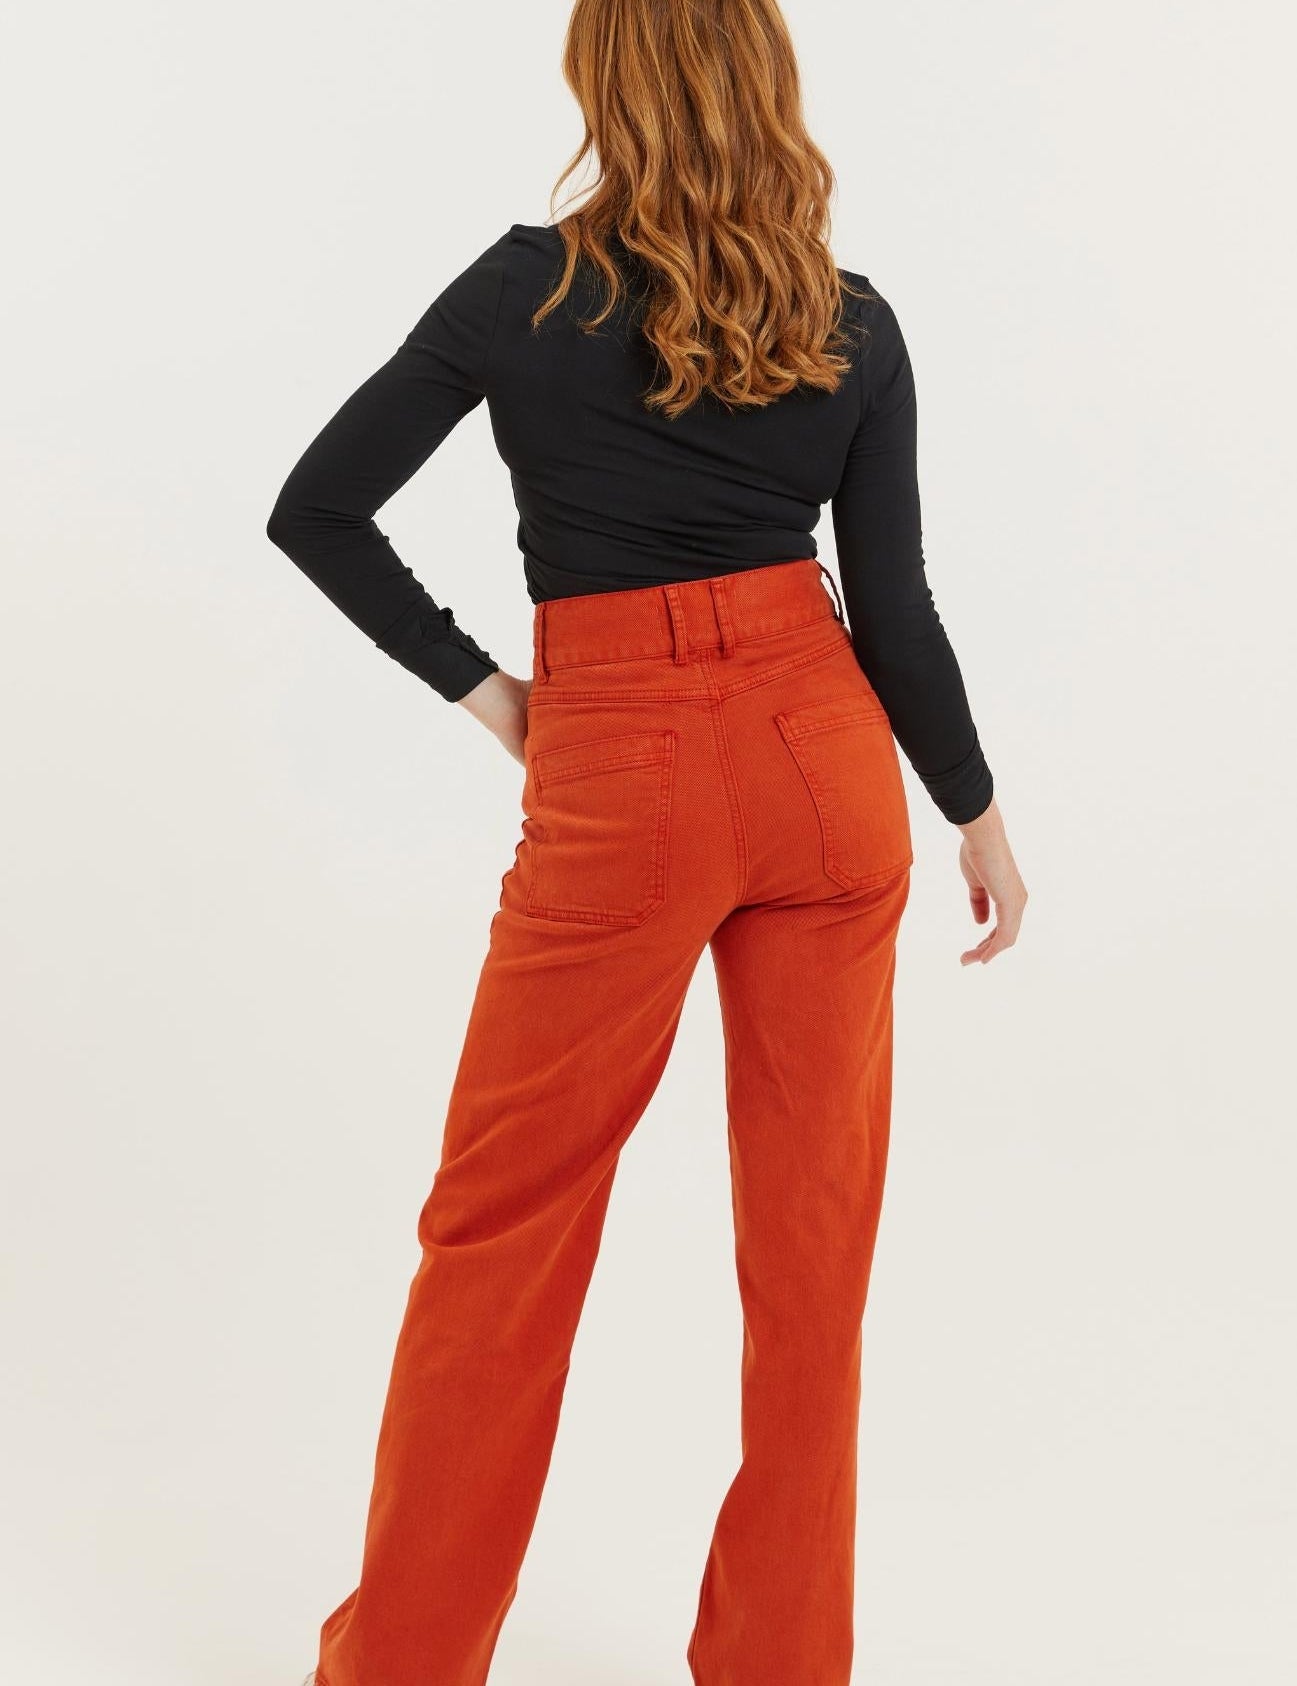 Dinah-Burnt-Orange-Jean-20.jpg